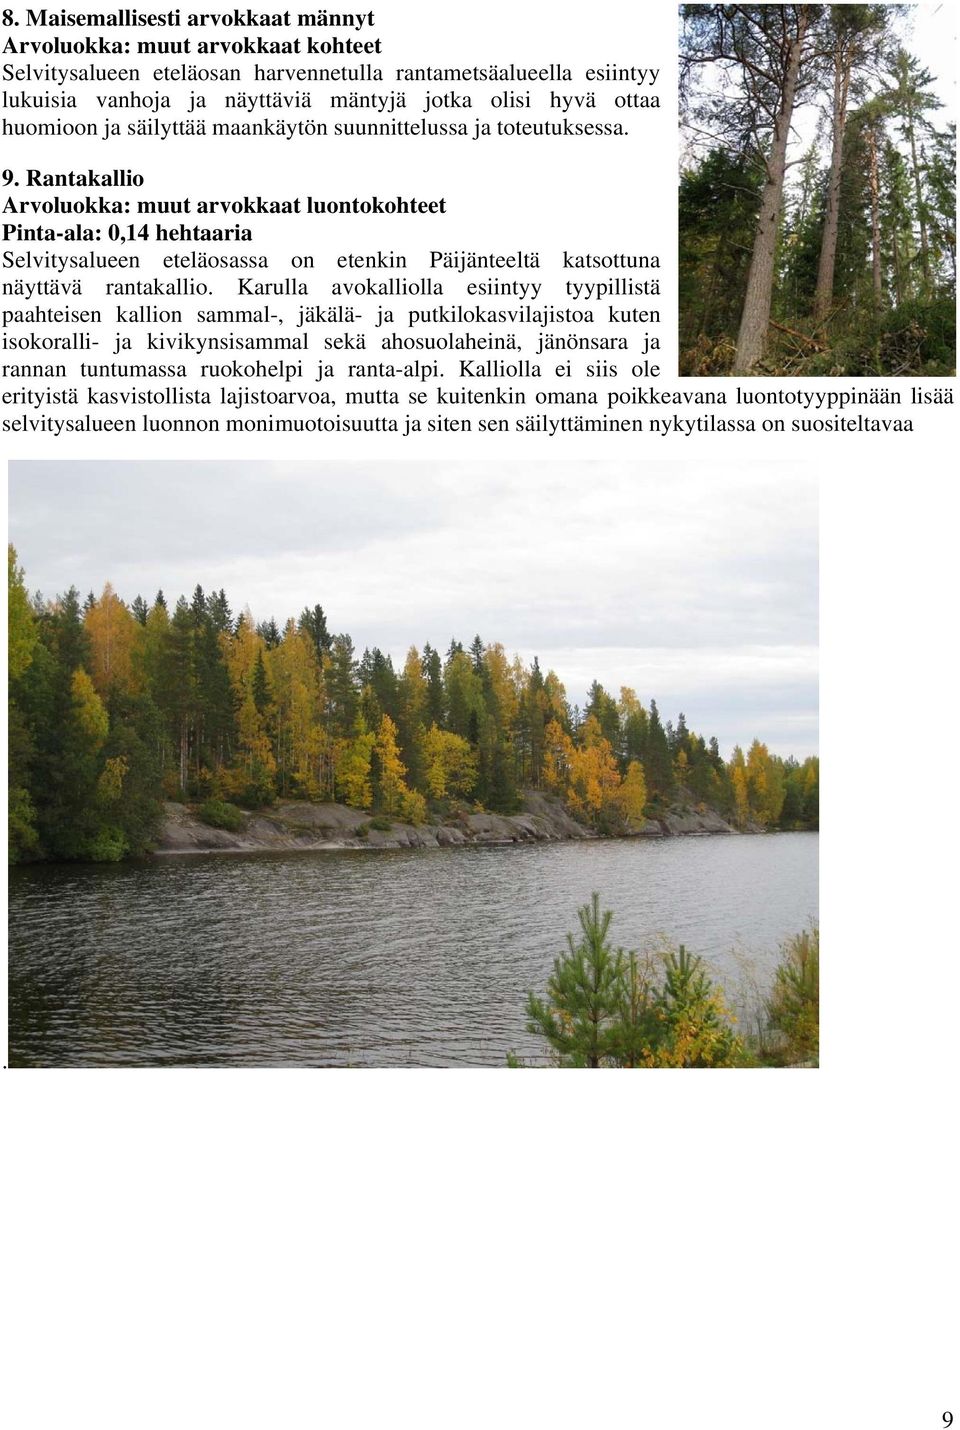 Rantakallio Arvoluokka: muut arvokkaat luontokohteet Pinta-ala: 0,14 hehtaaria Selvitysalueen eteläosassa on etenkin Päijänteeltä katsottuna näyttävä rantakallio.